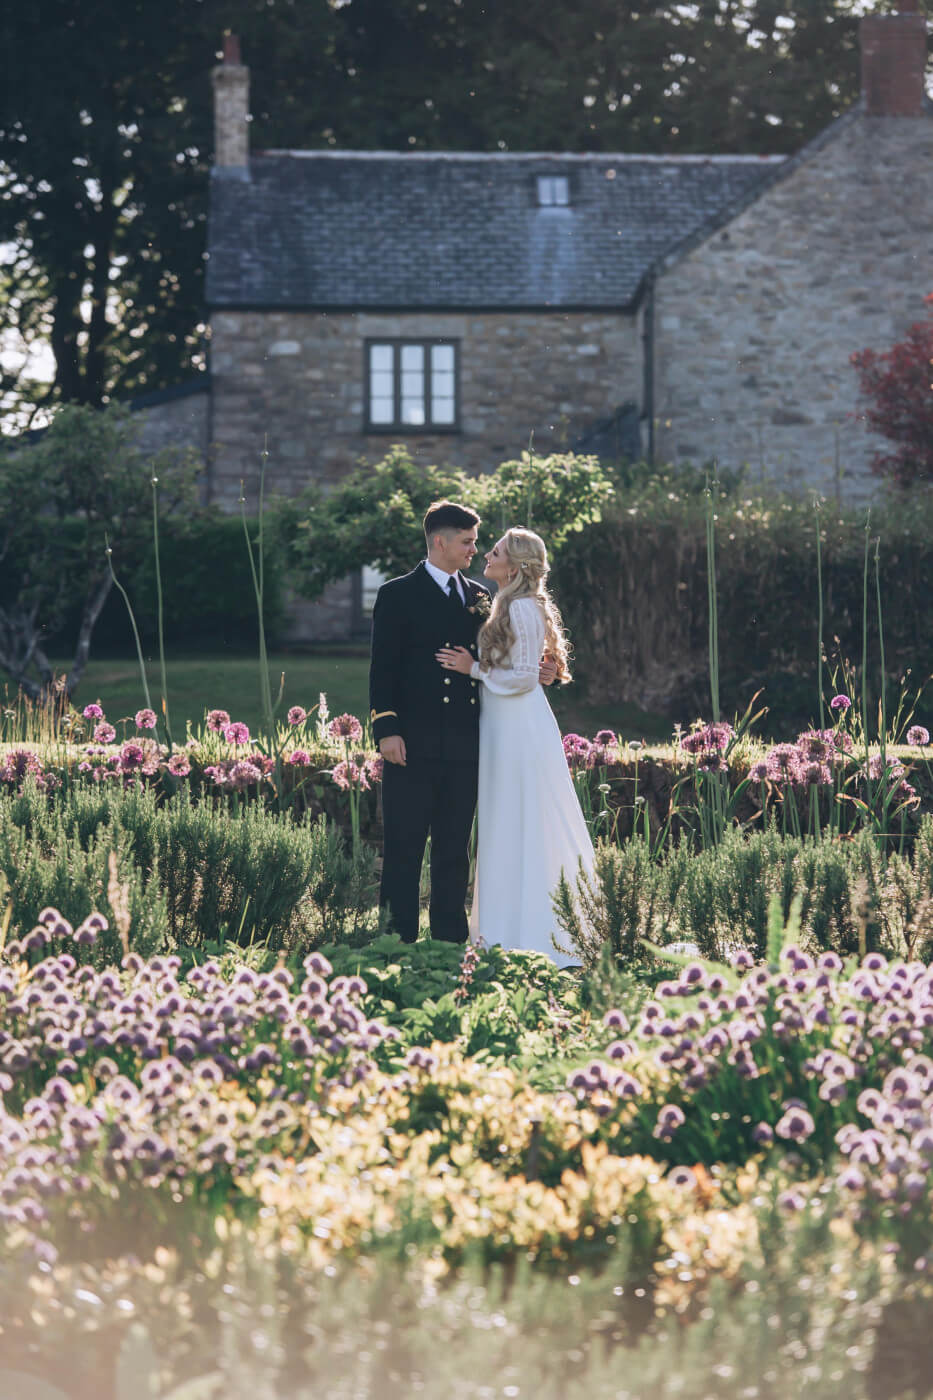 Charming Rustic barn wedding| Charlotte & Tom